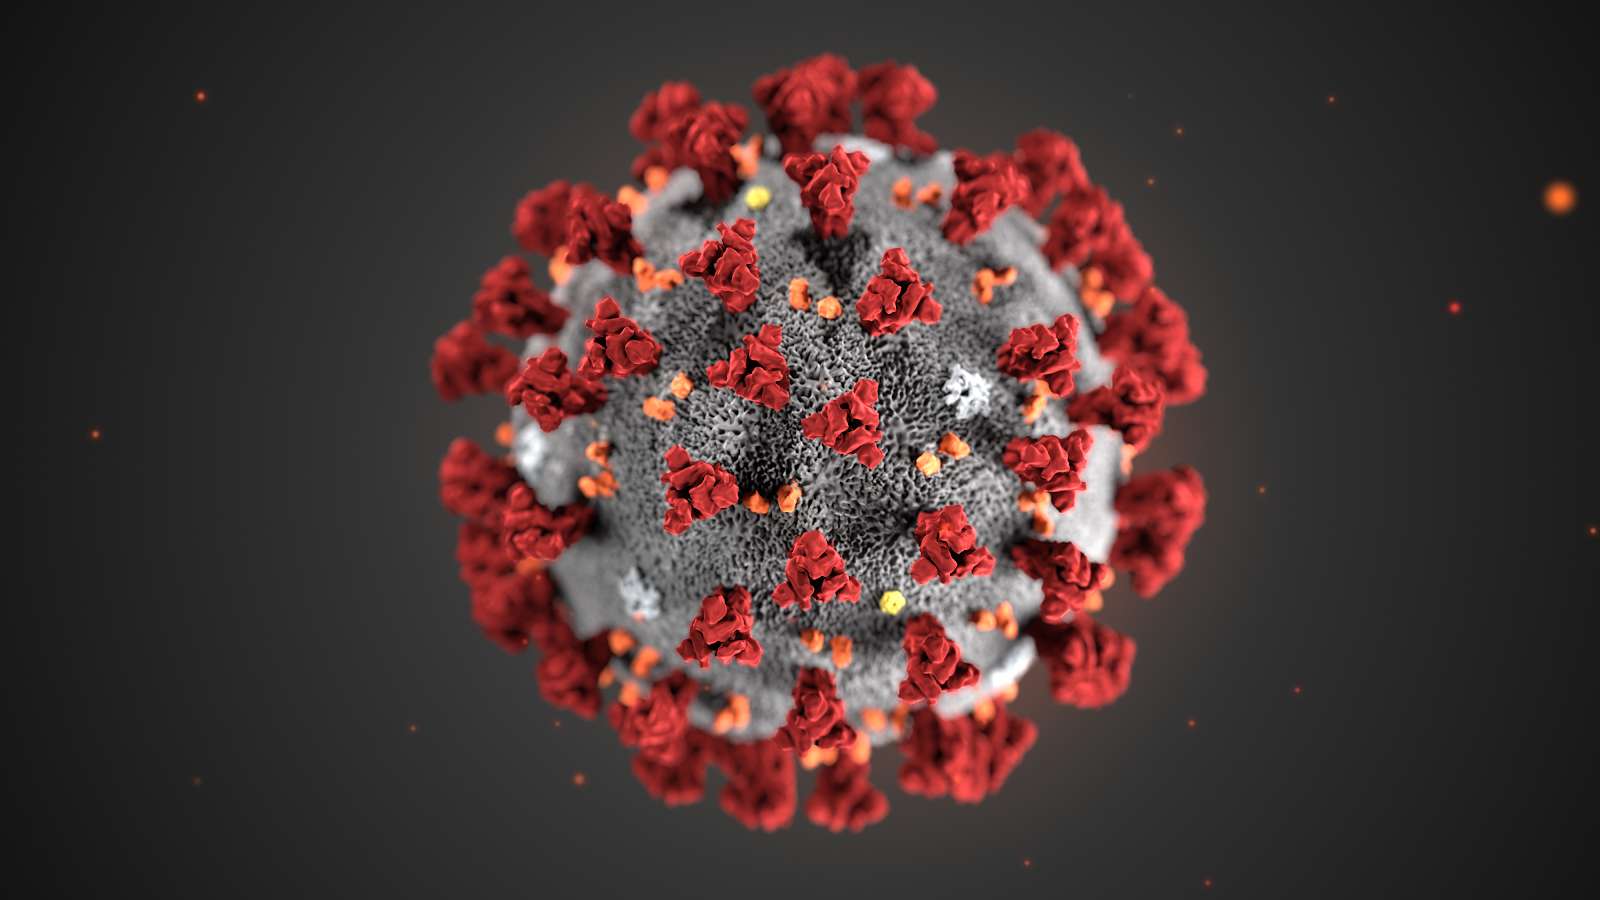 Cette illustration, créée aux Centers for Disease Control and Prevention (CDC), révèle la morphologie ultrastructurale des coronavirus. Notez les pointes, des protéines qui ornent la surface externe du virus donnant l'apparence d'une couronne entourant le virion, lorsqu'elles sont vues au microscope électronique. Un nouveau coronavirus, appelé syndrome respiratoire aigu sévère coronavirus 2 (SRAS-CoV-2), a été identifié comme la cause d'une épidémie de maladie respiratoire détectée pour la première fois à Wuhan, en Chine en 2019. La maladie causée par ce virus a été appelée maladie de coronavirus 2019 (Covid-19). © DP, Alissa Eckert, MS ; Dan Higgins, MAMS